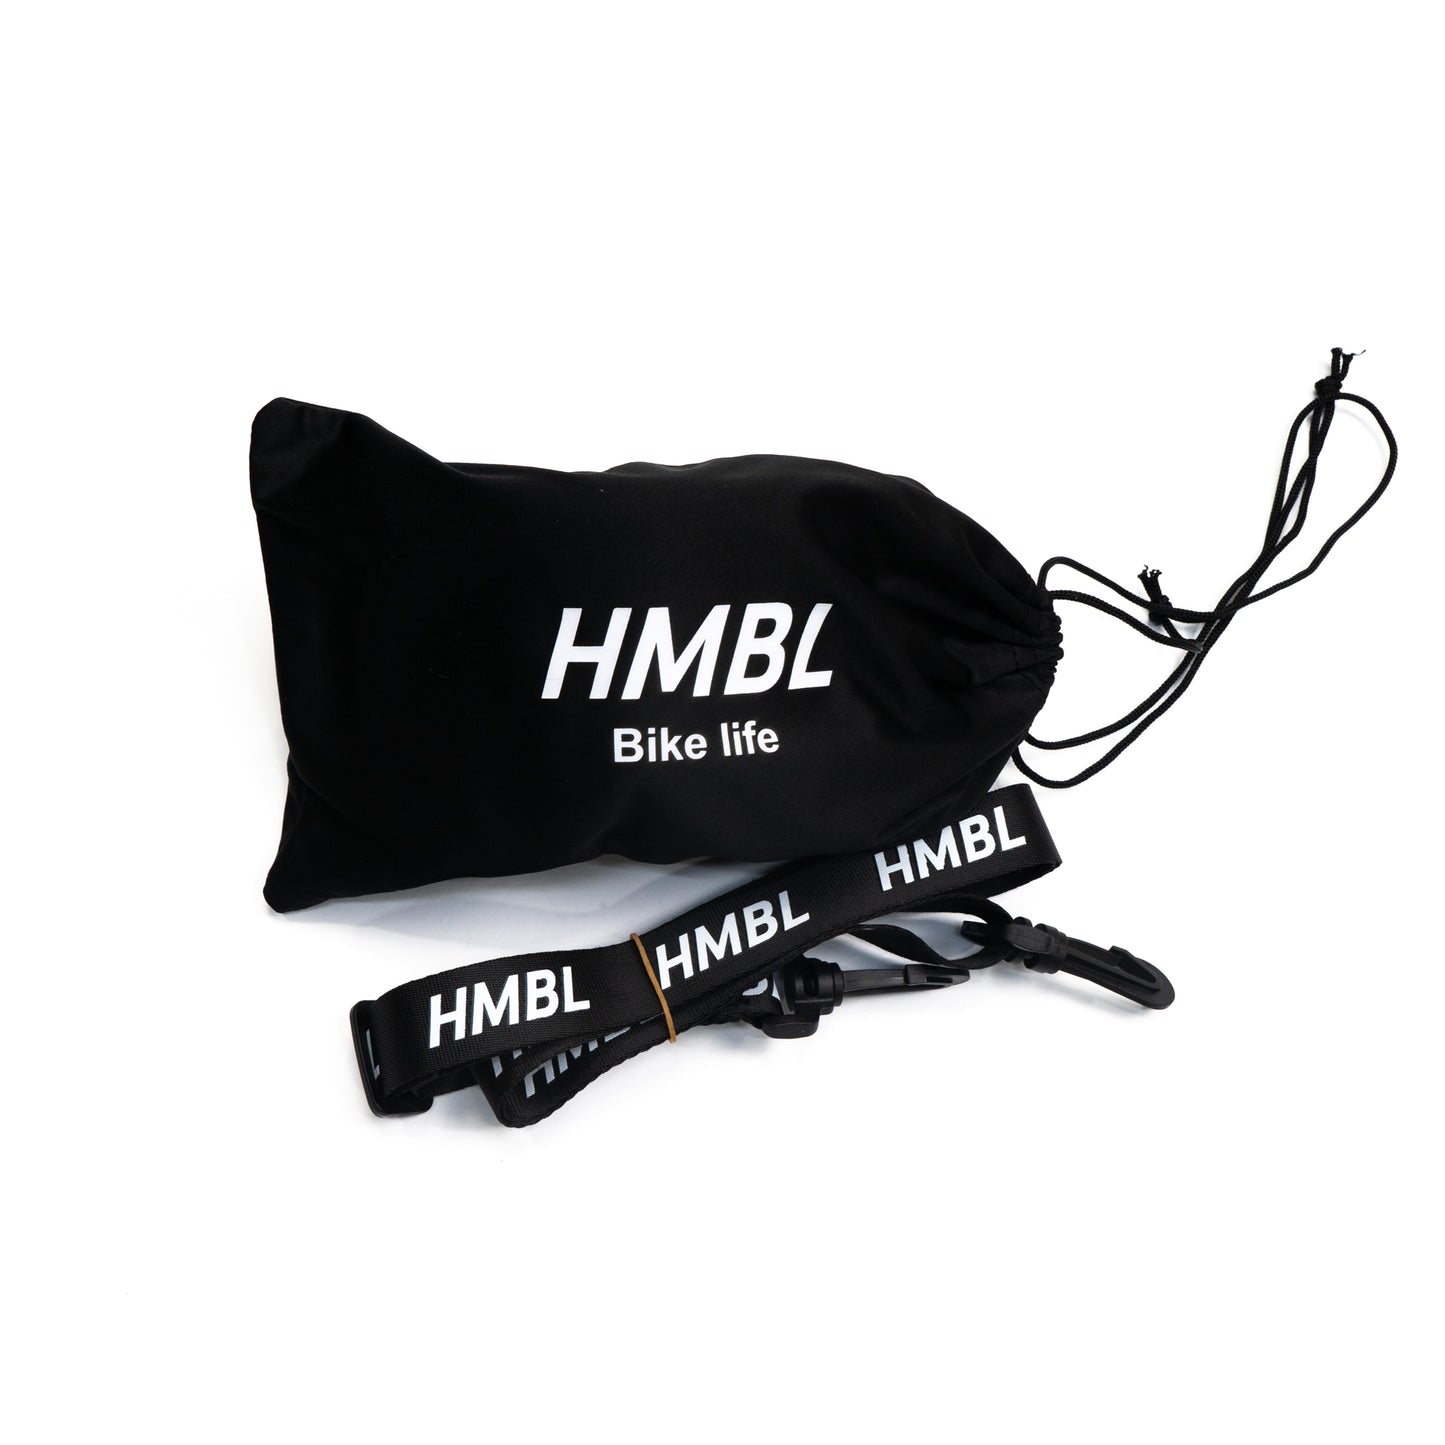 Blackout HMBL goggles